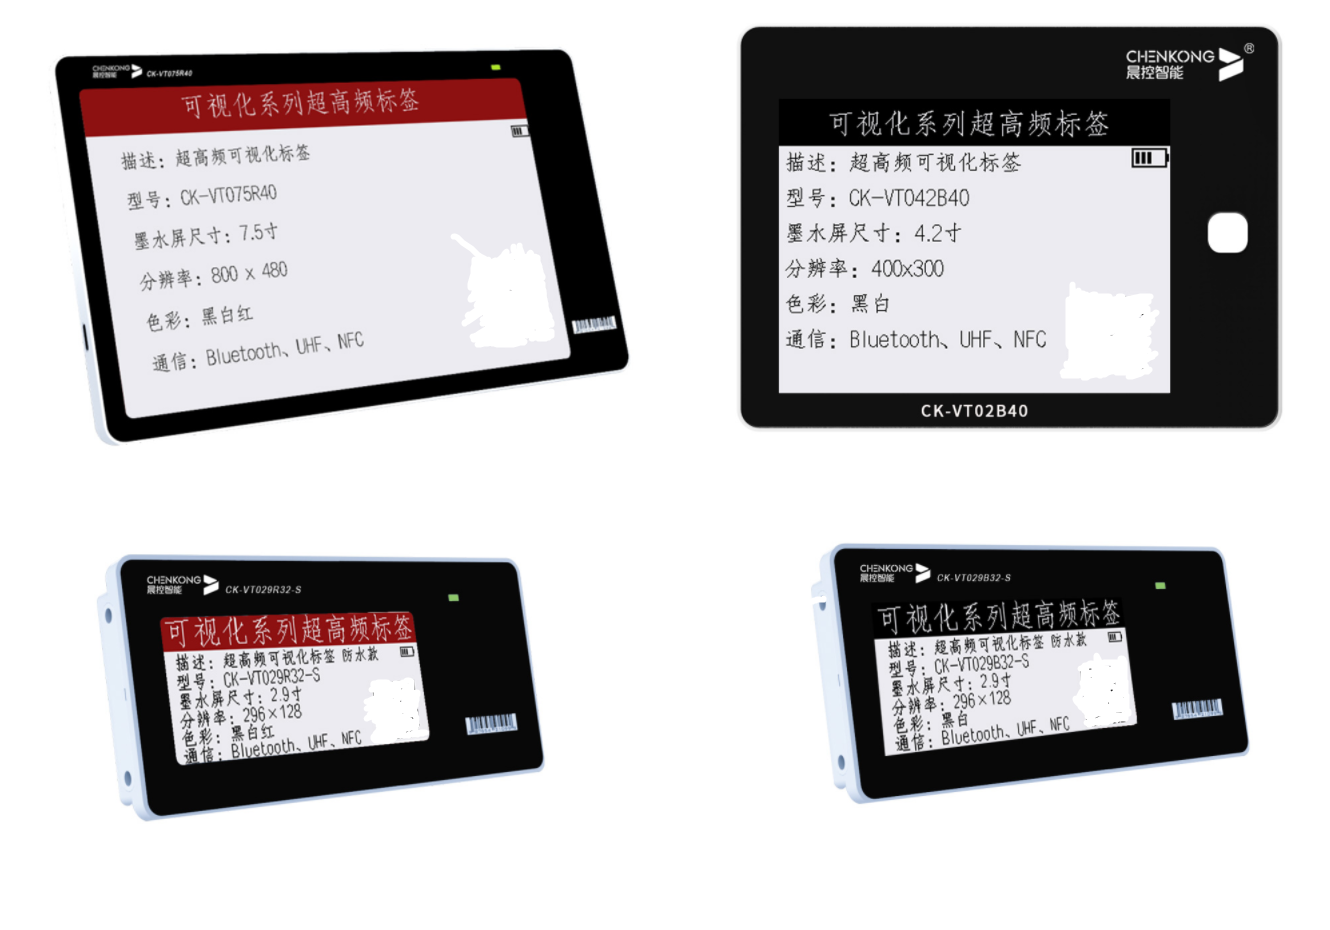 可视化标签：晨控公司在研项目电子纸目前已经上市投入生产